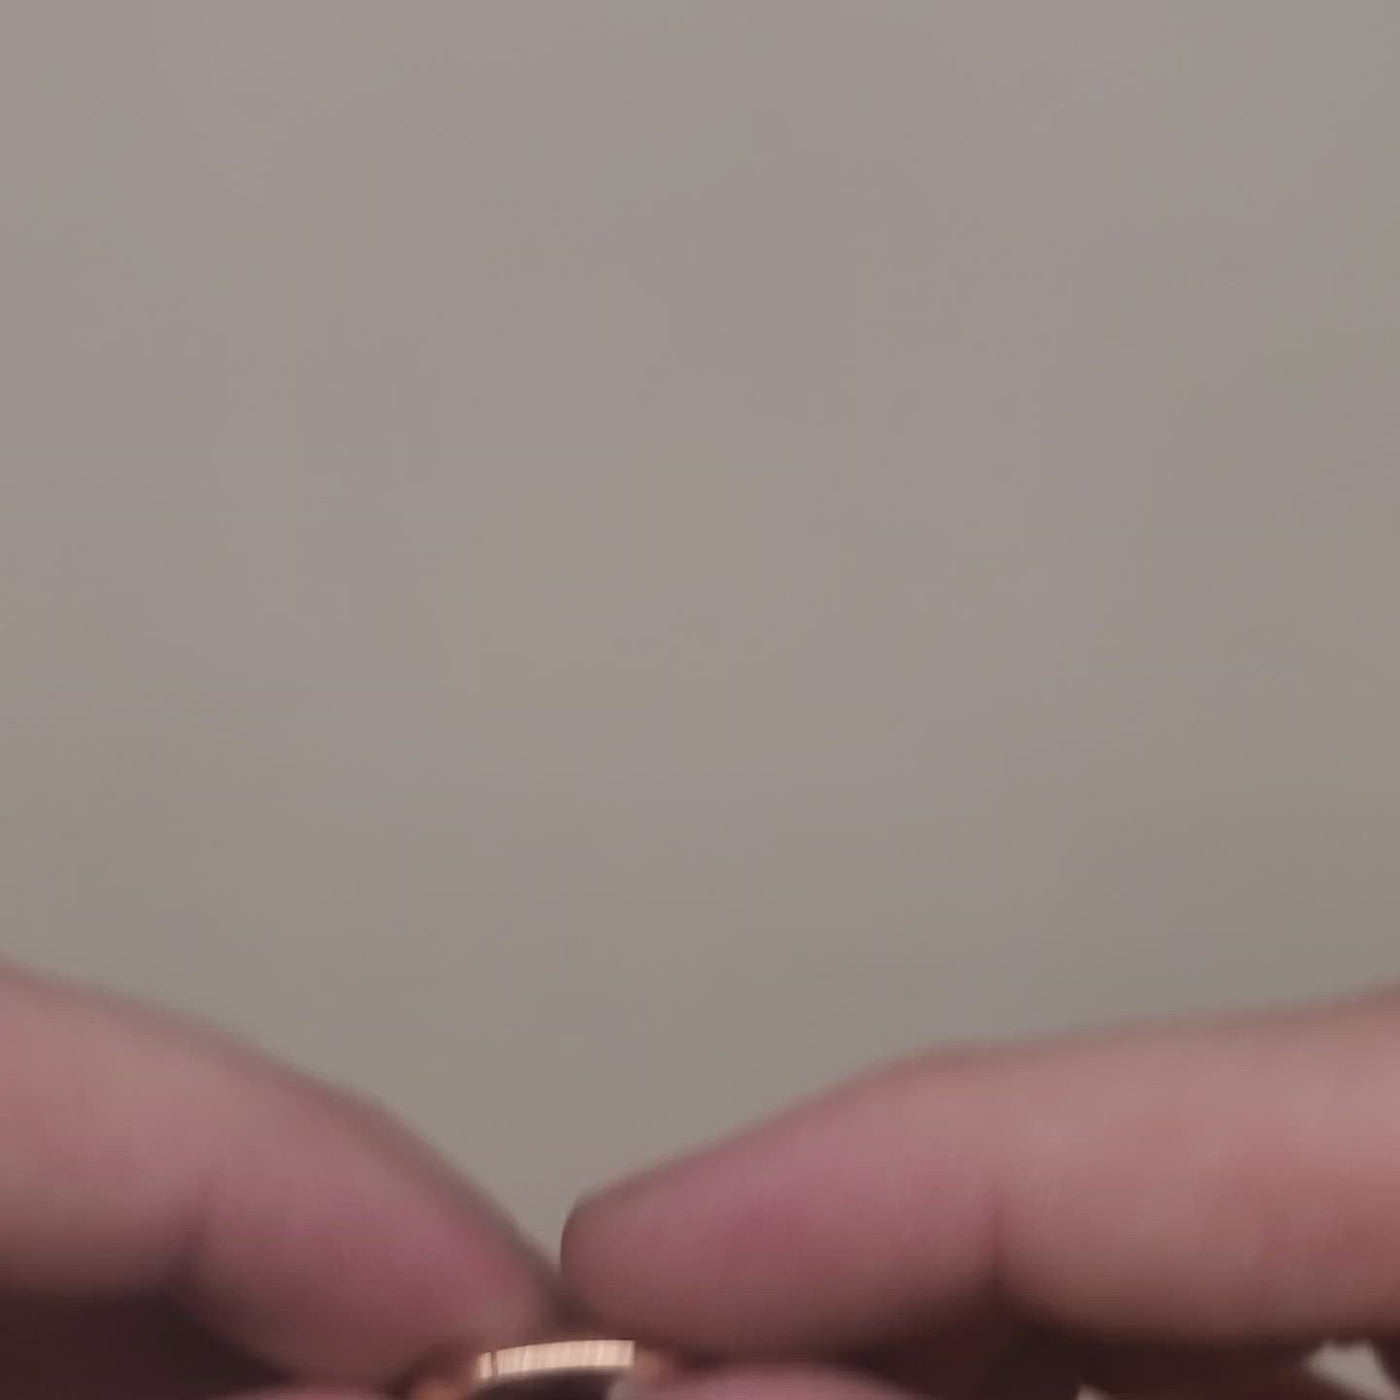 Rose gold men's wedding ring.